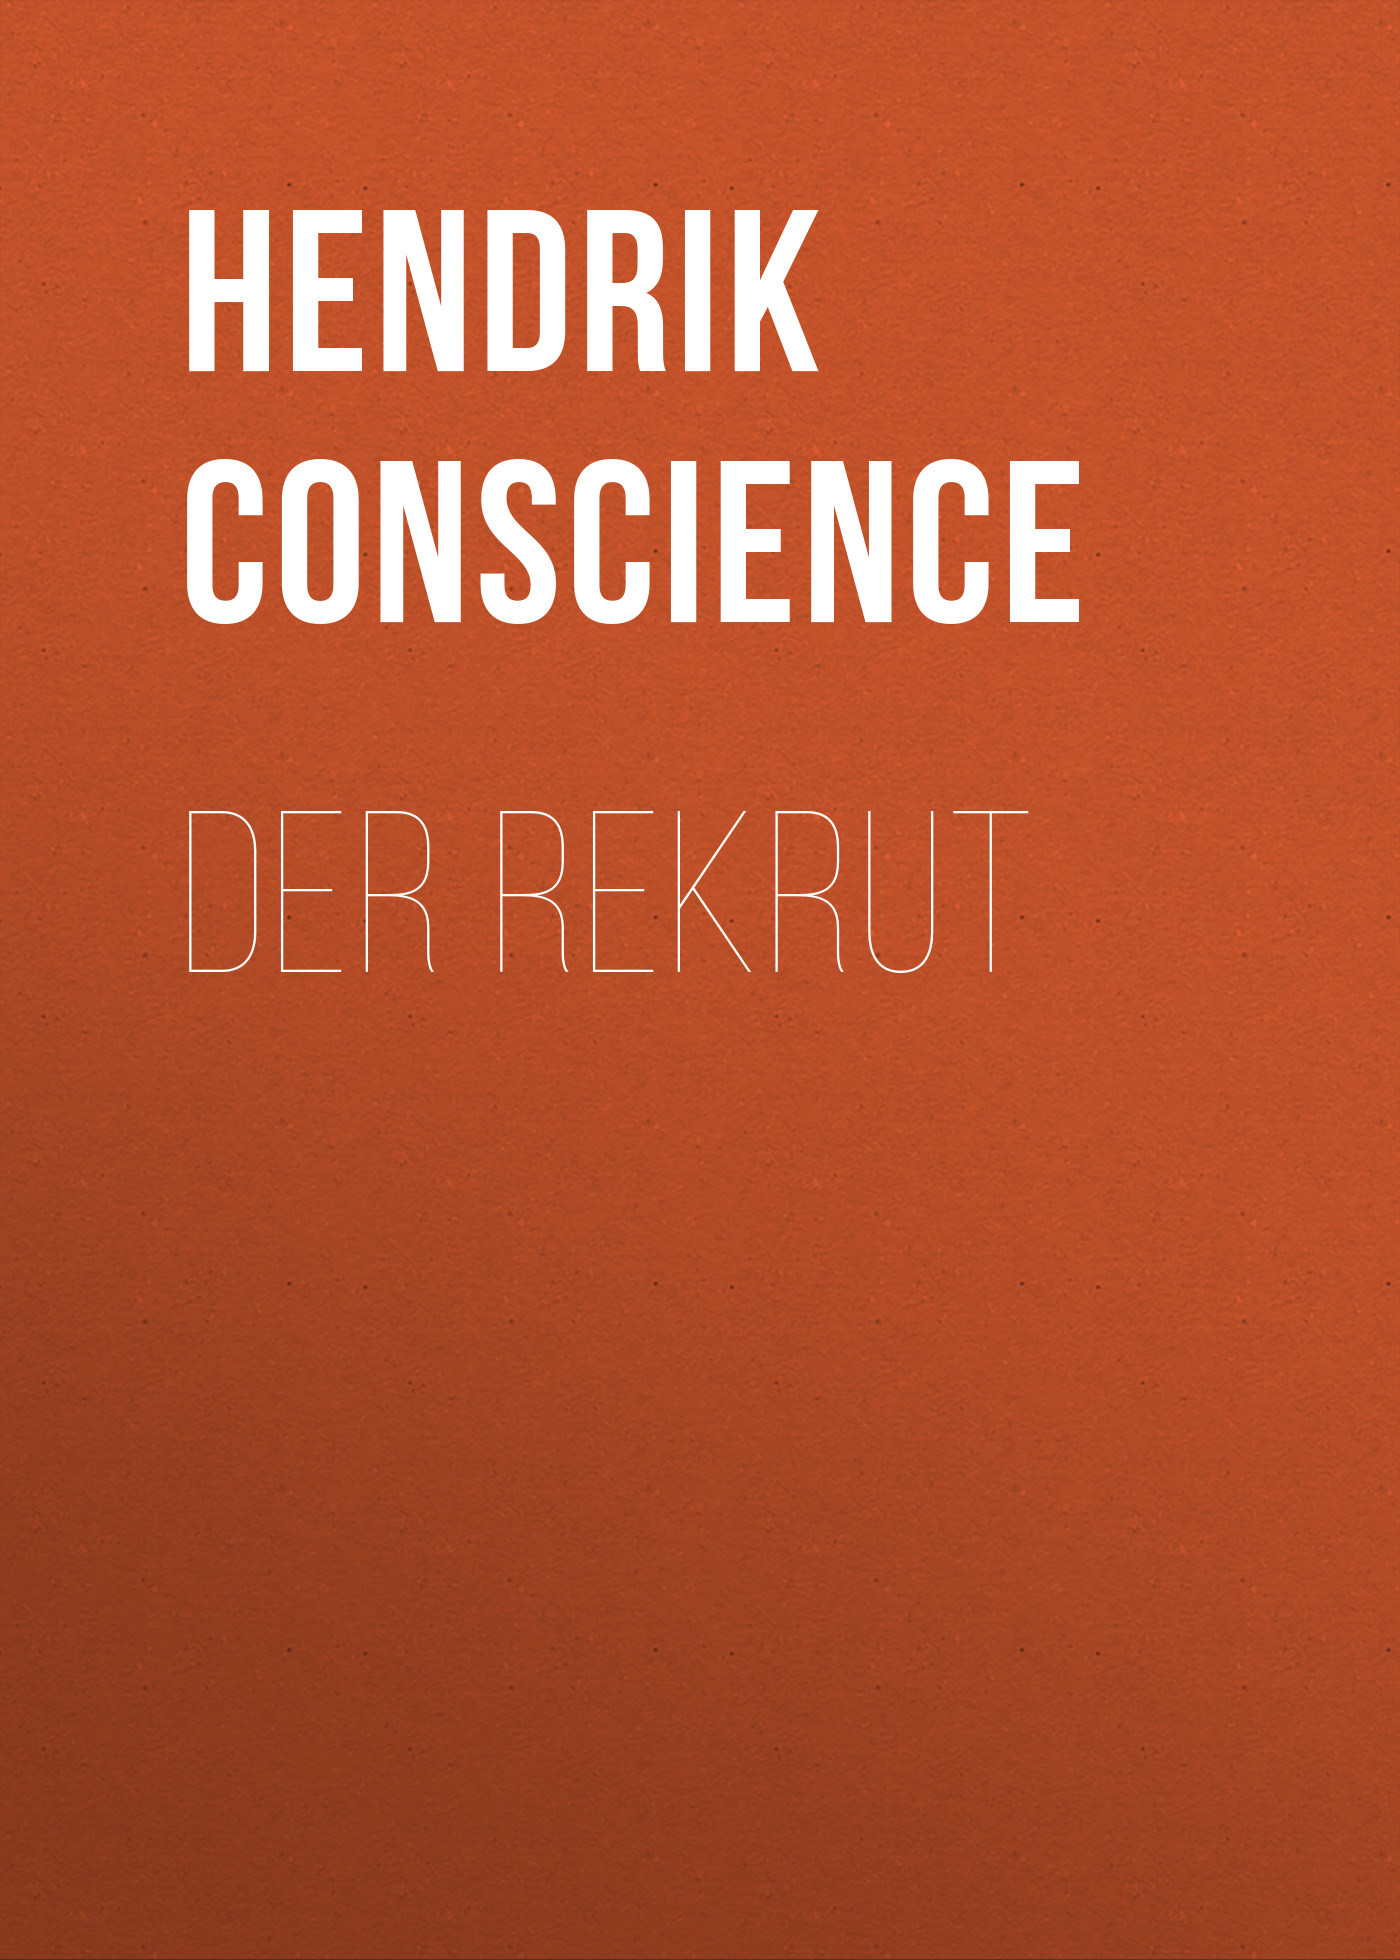 Книга Der Rekrut из серии , созданная Hendrik Conscience, может относится к жанру Зарубежная классика. Стоимость электронной книги Der Rekrut с идентификатором 48633460 составляет 0 руб.